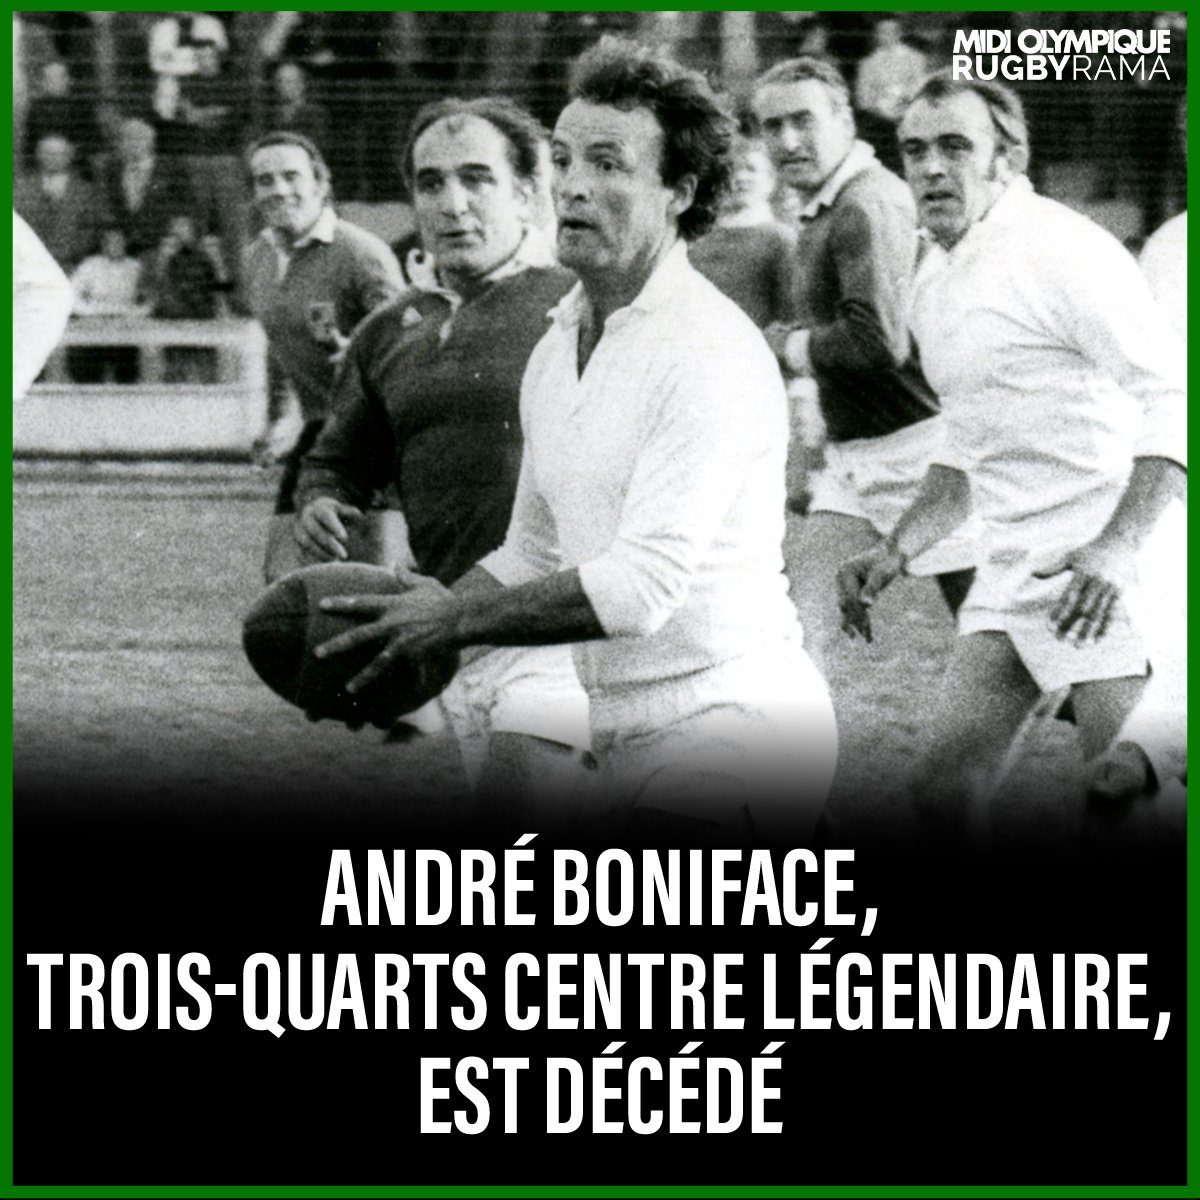 André Boniface, légendaire figure du rugby français et du Stade montois, est décédé aujourd'hui à 89 ans.